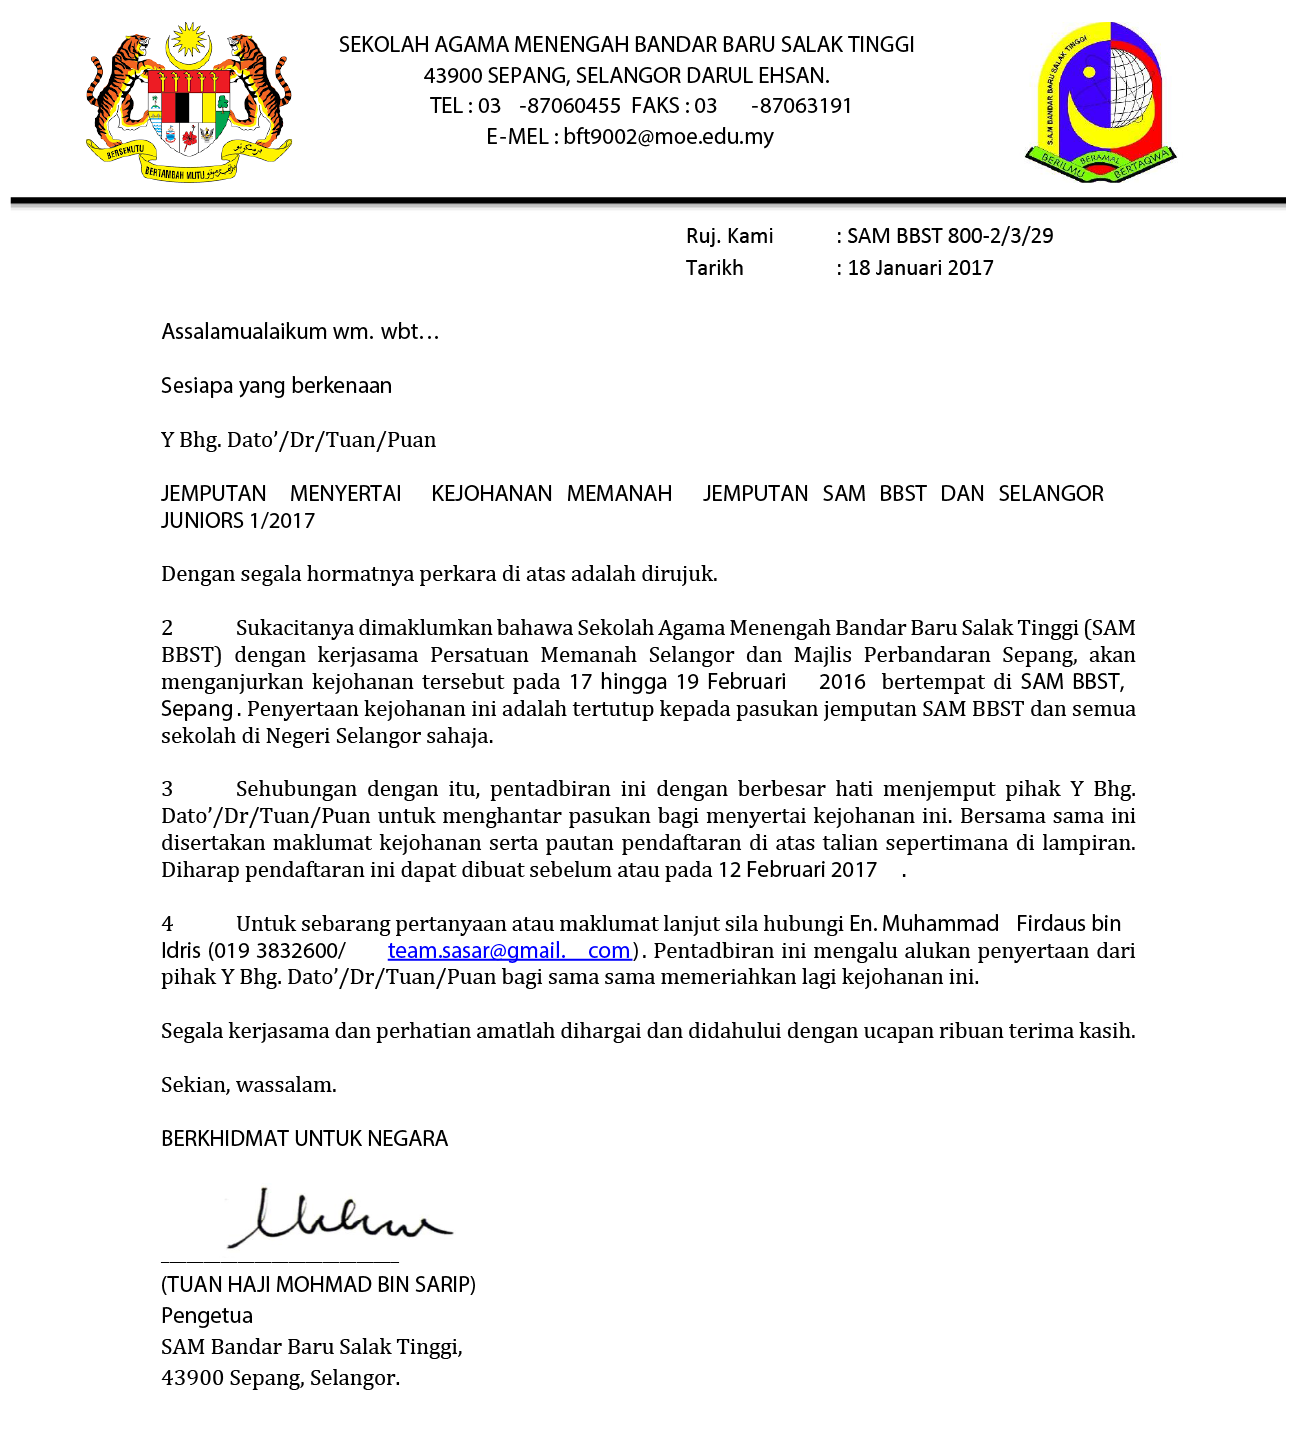 Kejohanan Memanah Jemputan SAM BBST dan Selangor Juniors 1-2017